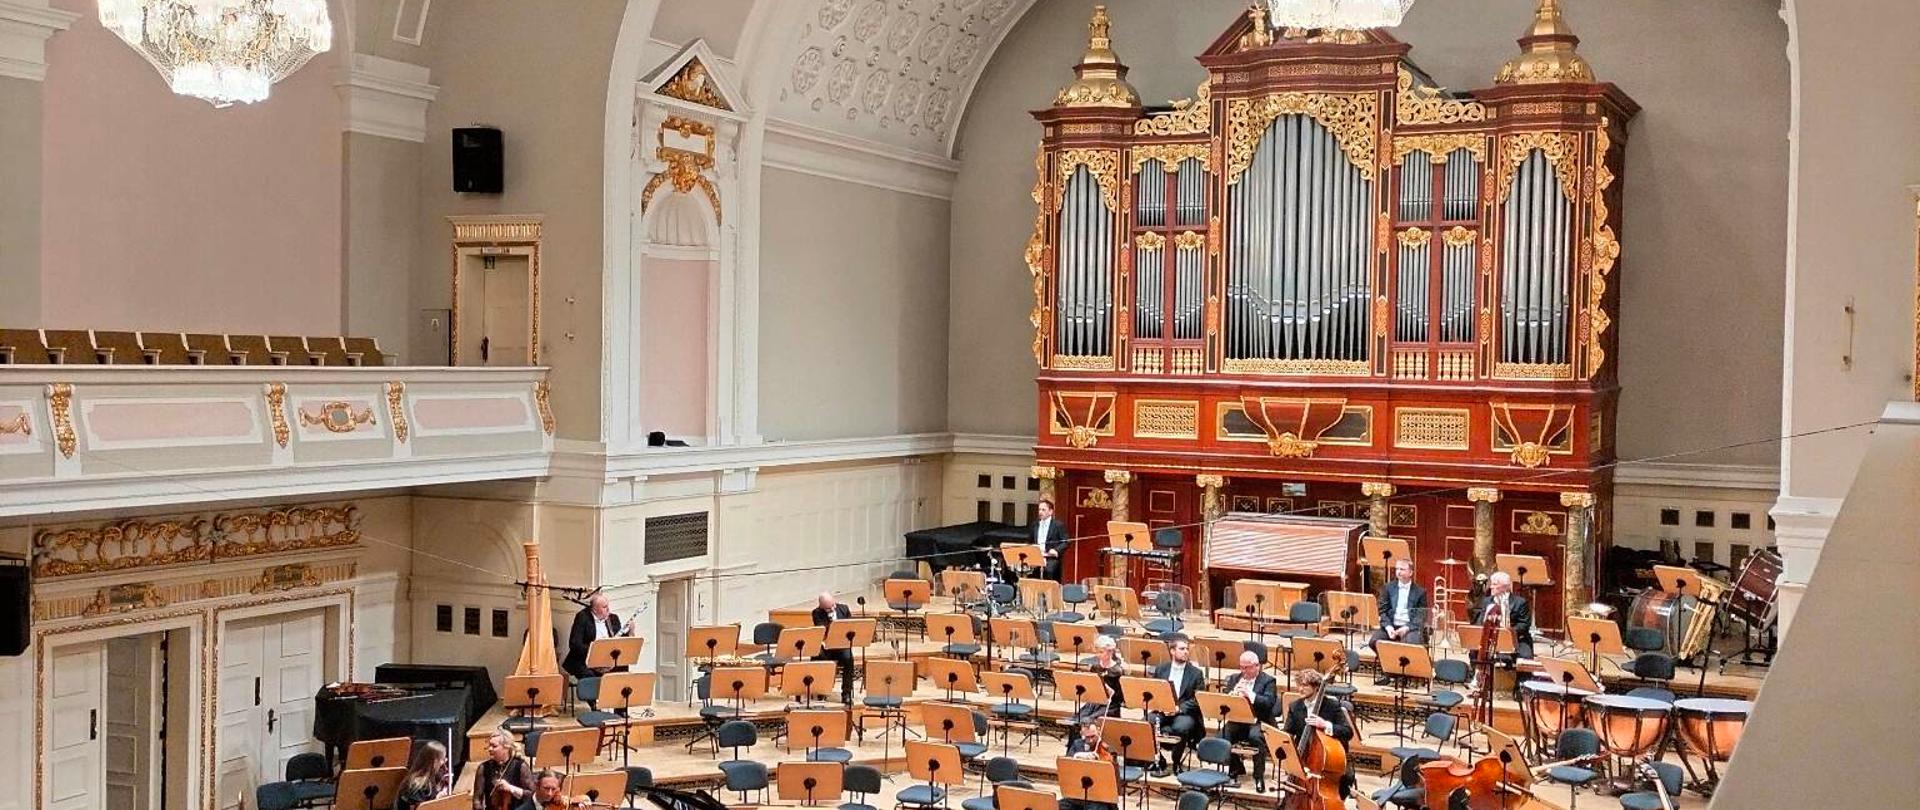 zdjęcie wnętrza filharmonii, po prawej organy, u dołu muzycy na scenie, pulpity, krzesła oraz widownia , po lewej balkon, u góry dwa żyrandole